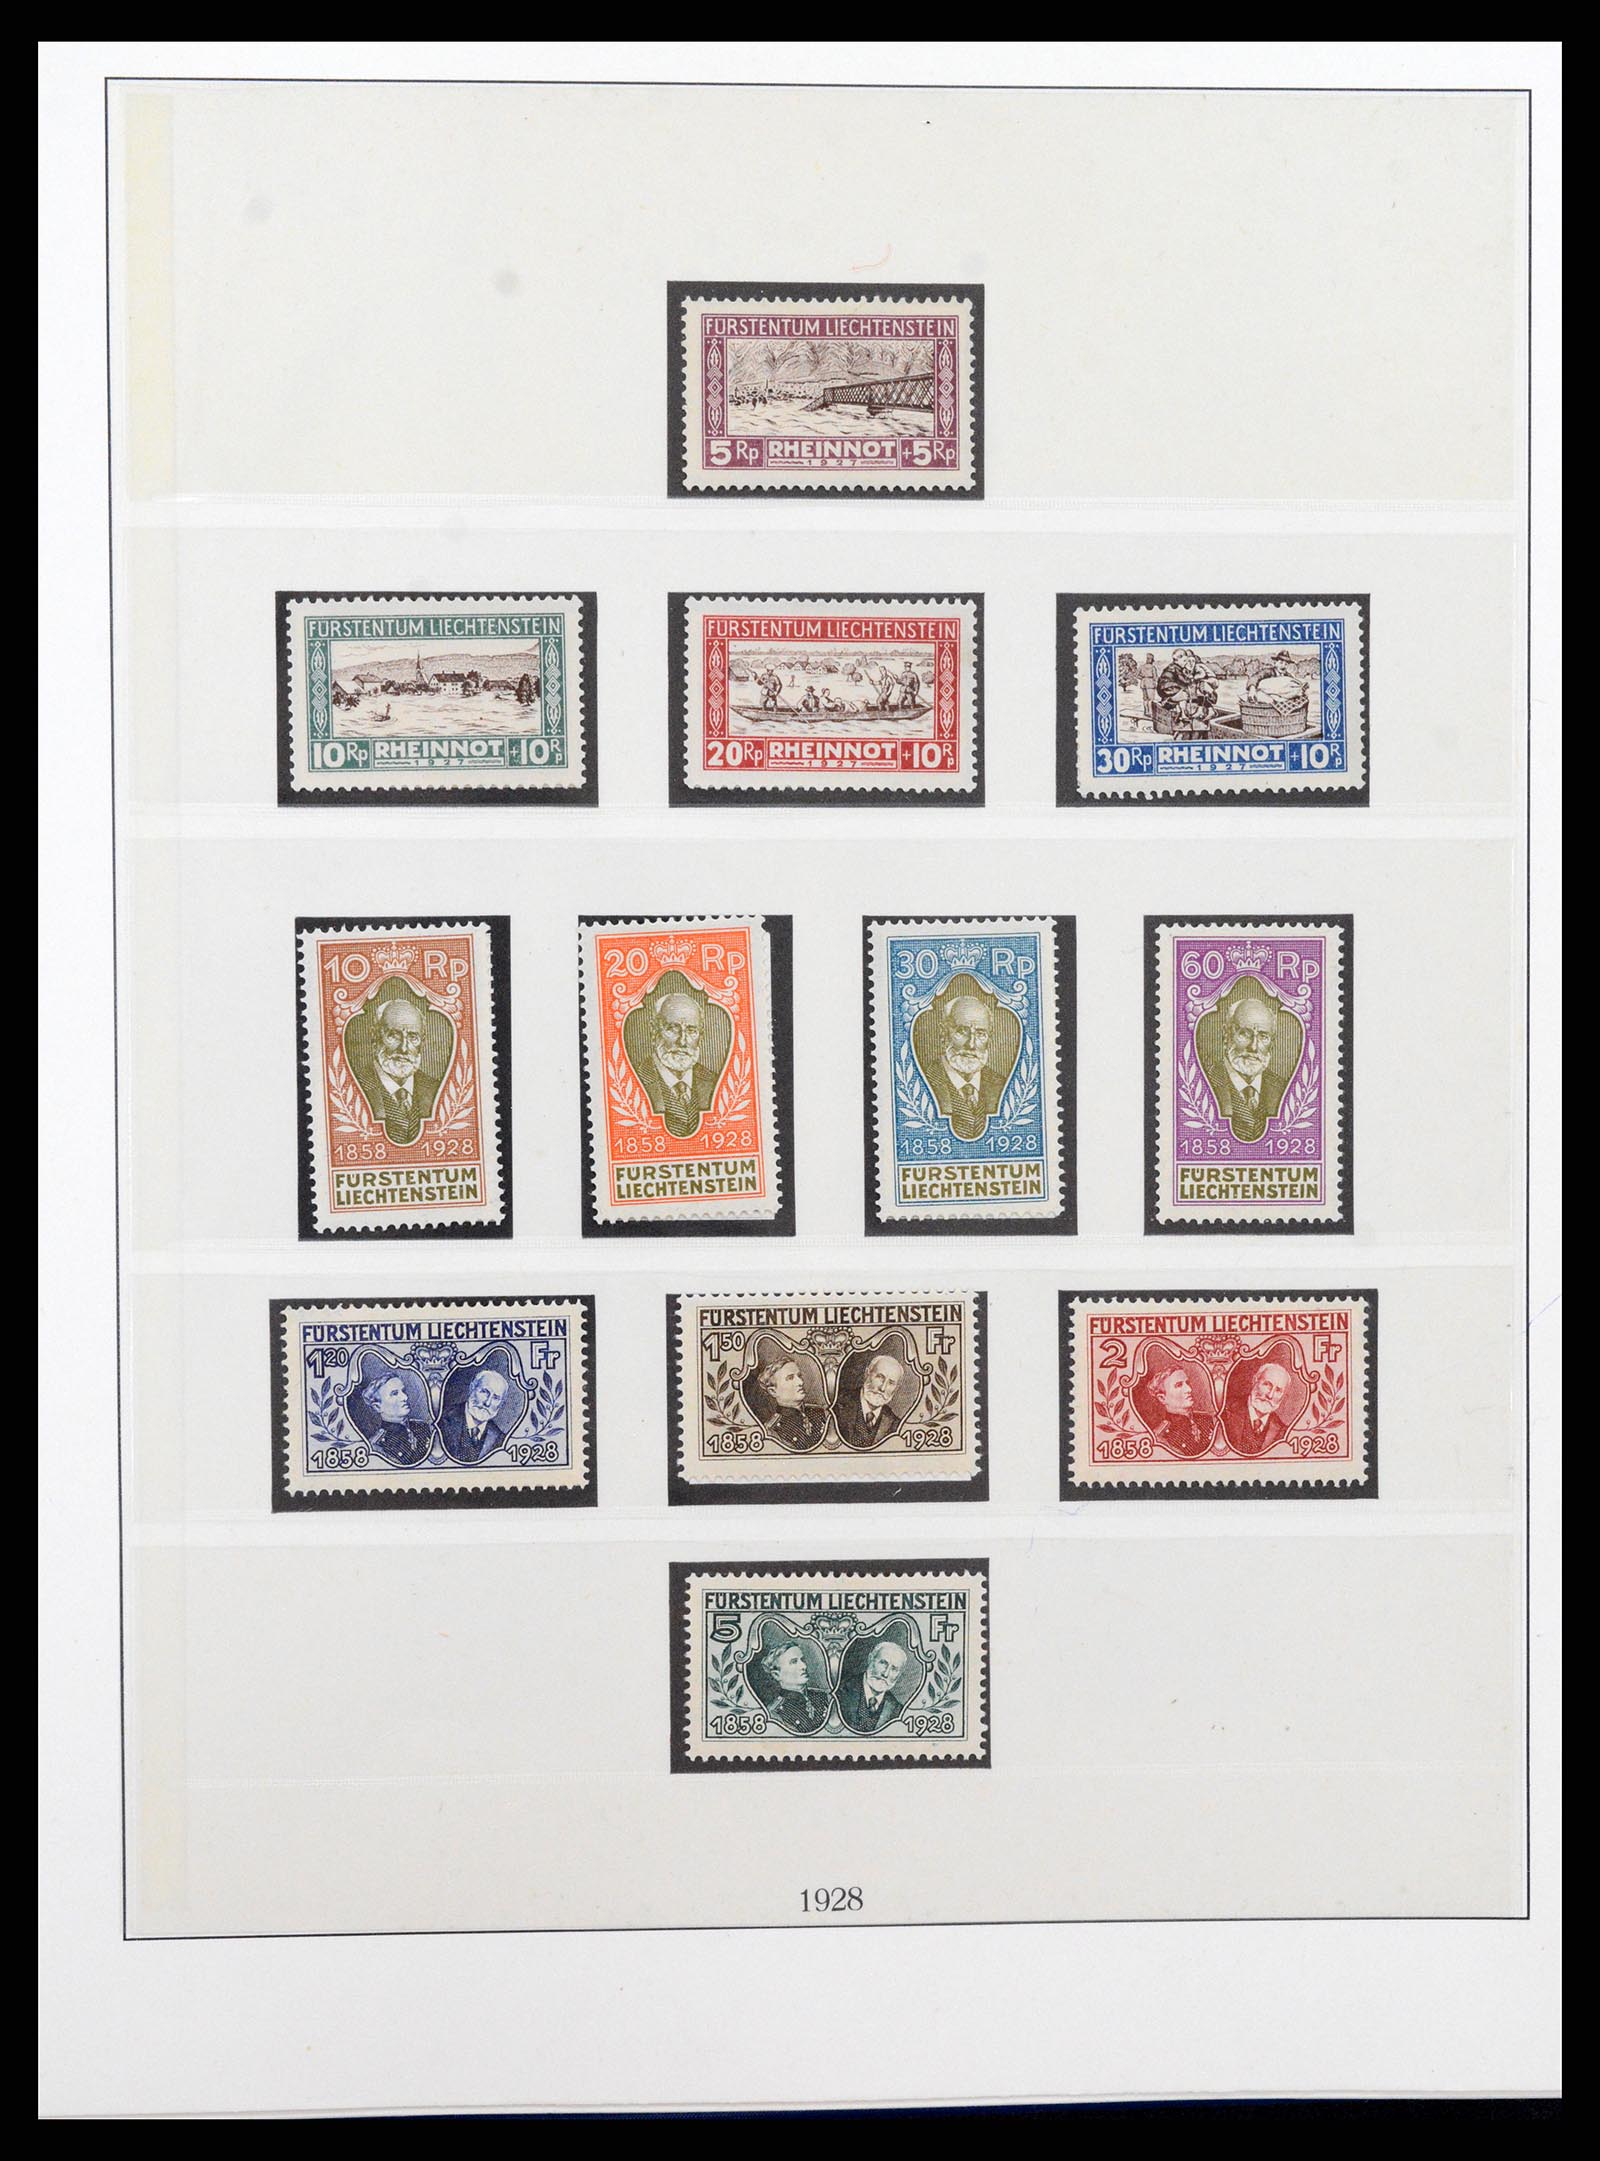 37295 008 - Stamp collection 37295 Liechtenstein 1912-2009.